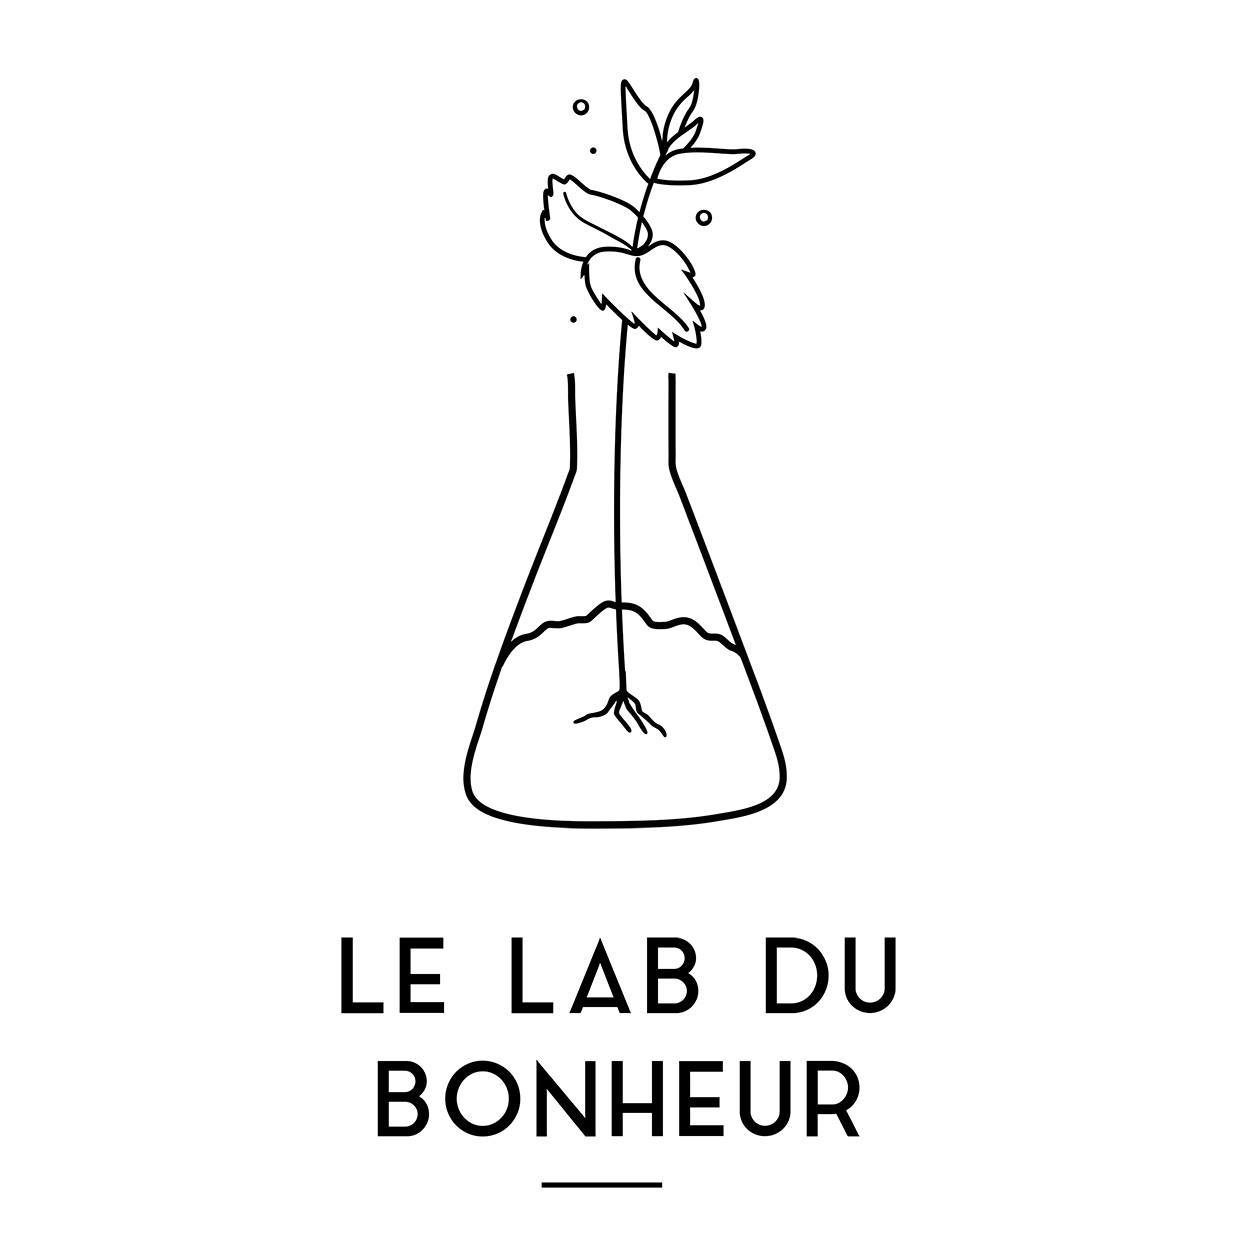 Le Lab Du Bonheur - Saint-Germain-en-Laye